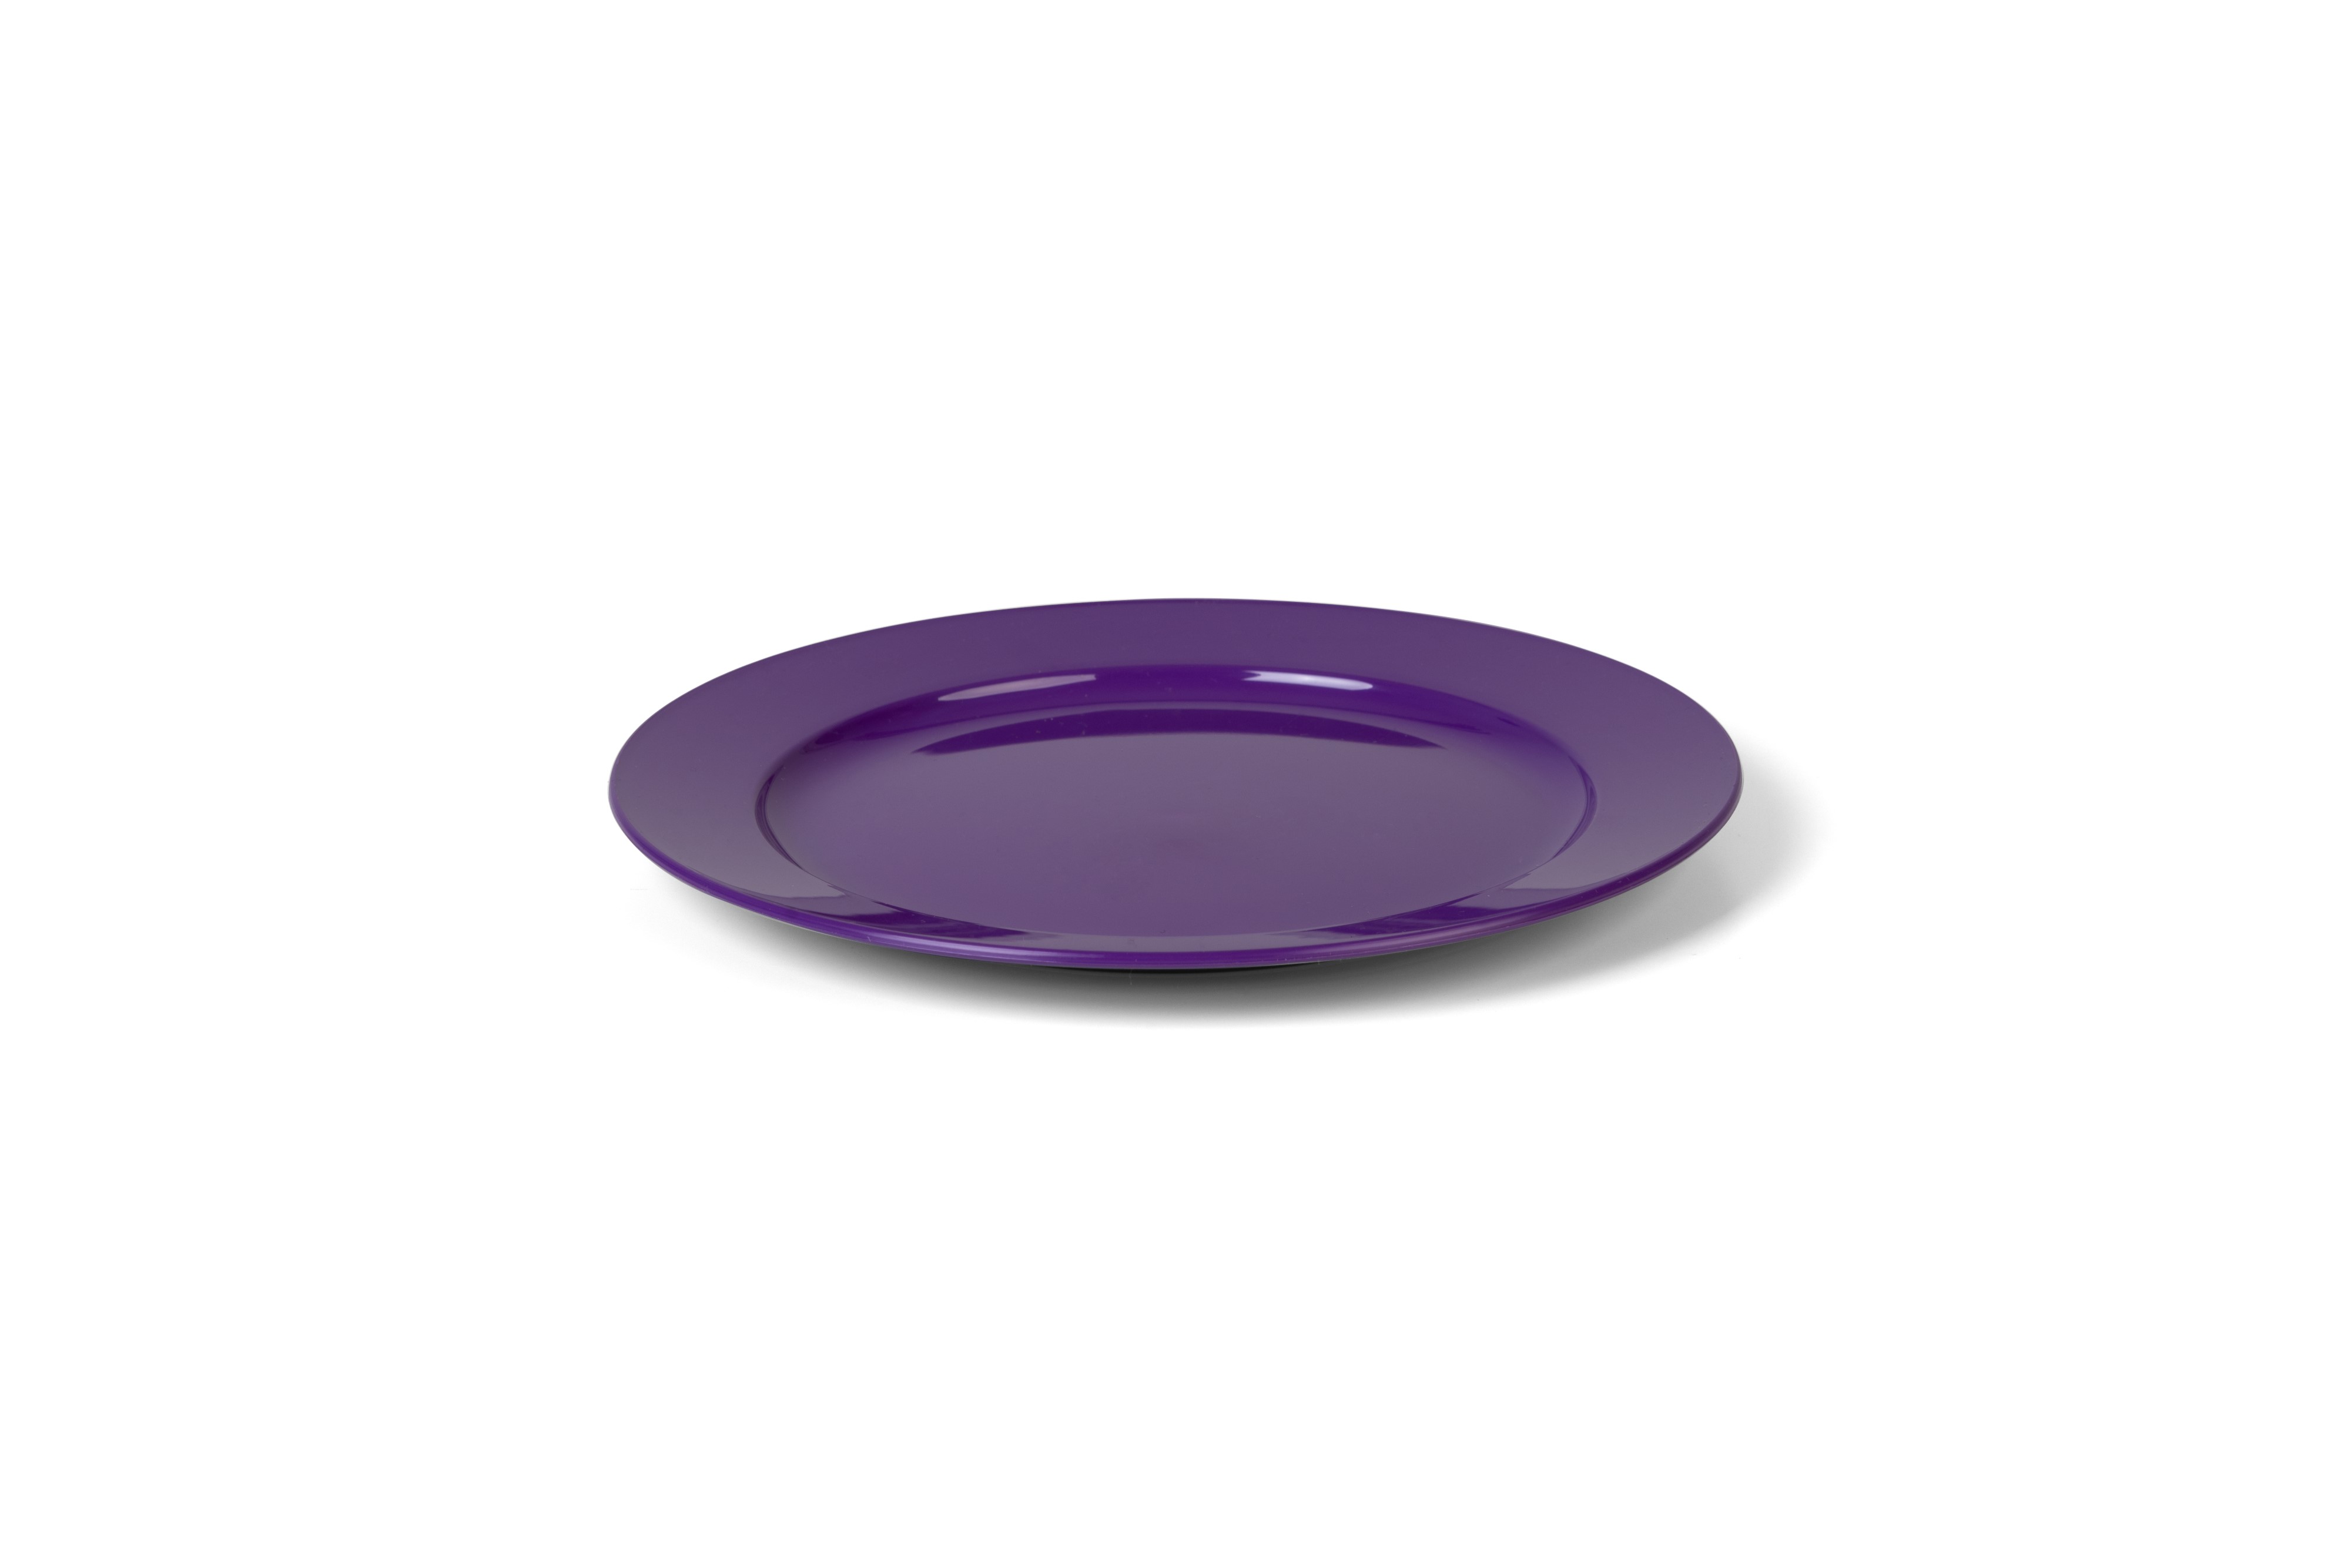 vaLon Zephyr Frühstücksteller 20 cm aus schadstofffreiem Kunststoff in der Farbe lila.